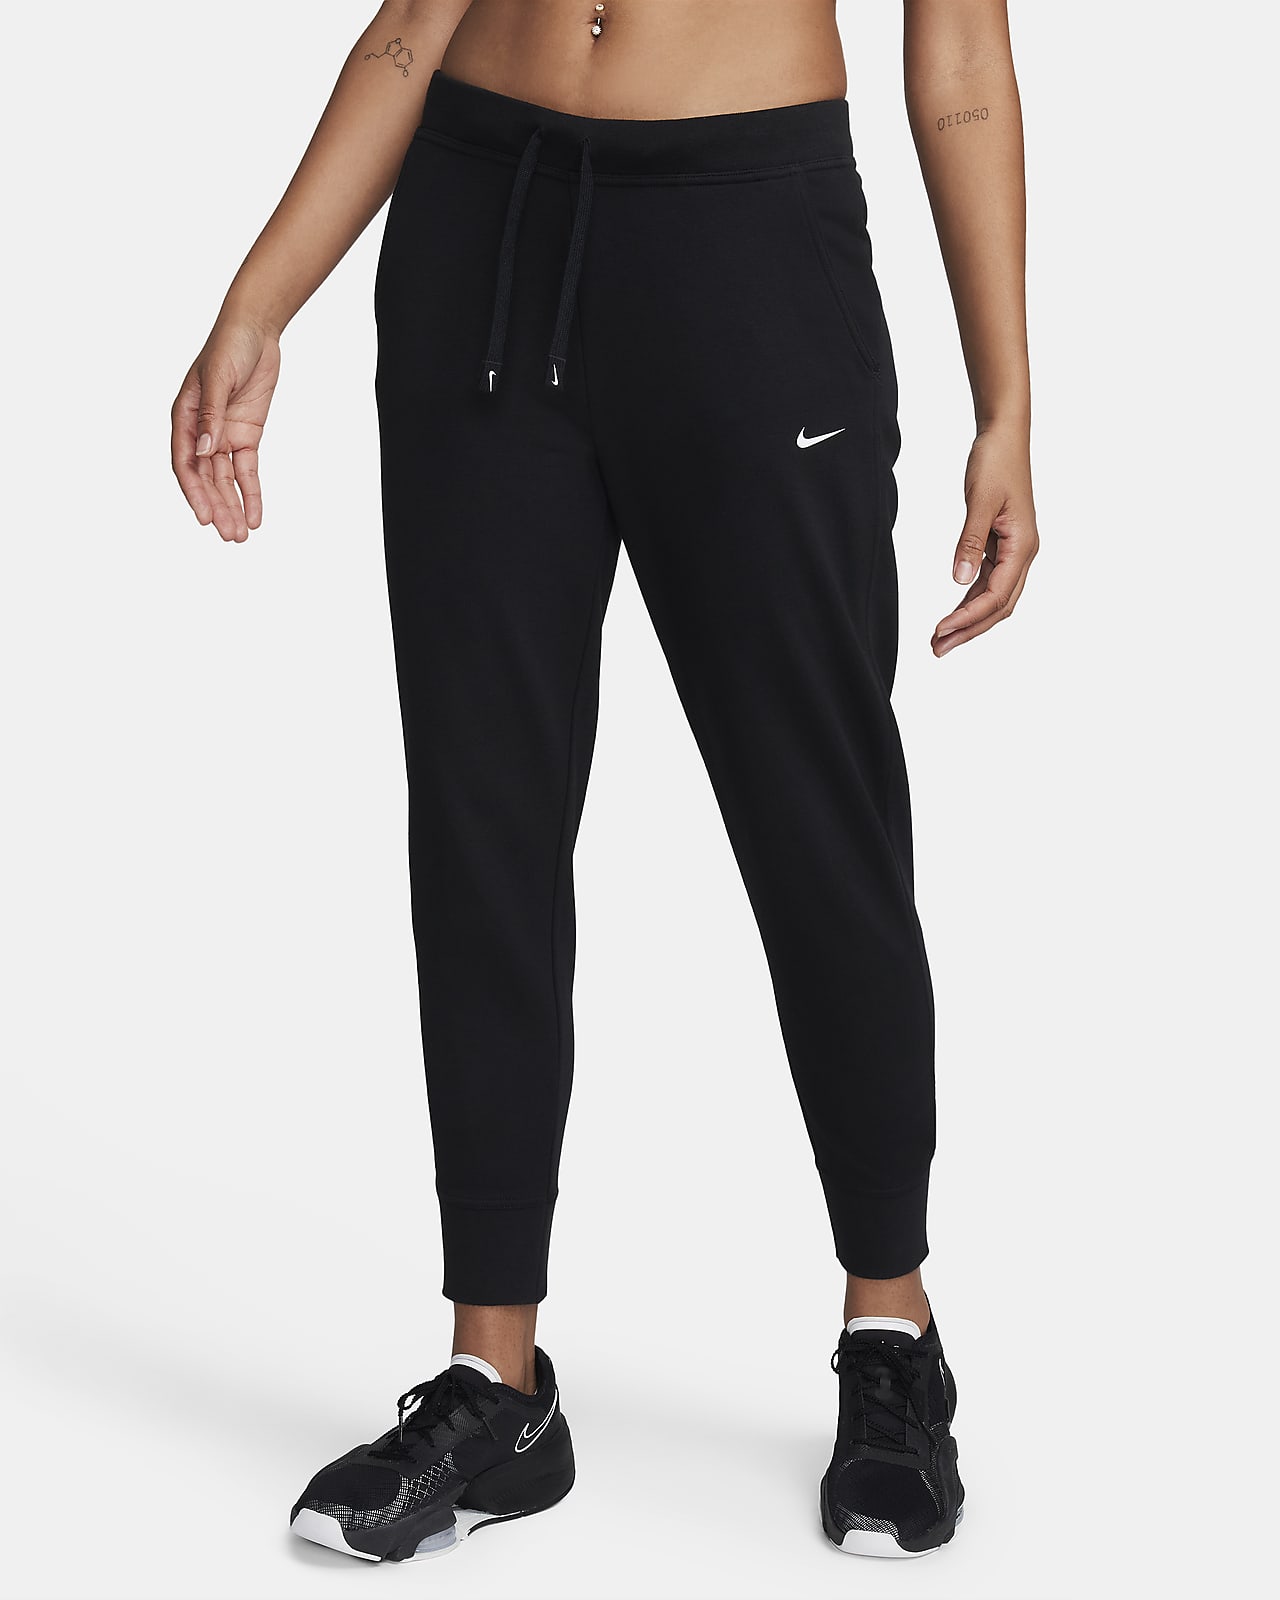 Pantalon de training Nike Dri-FIT Get Fit pour Femme